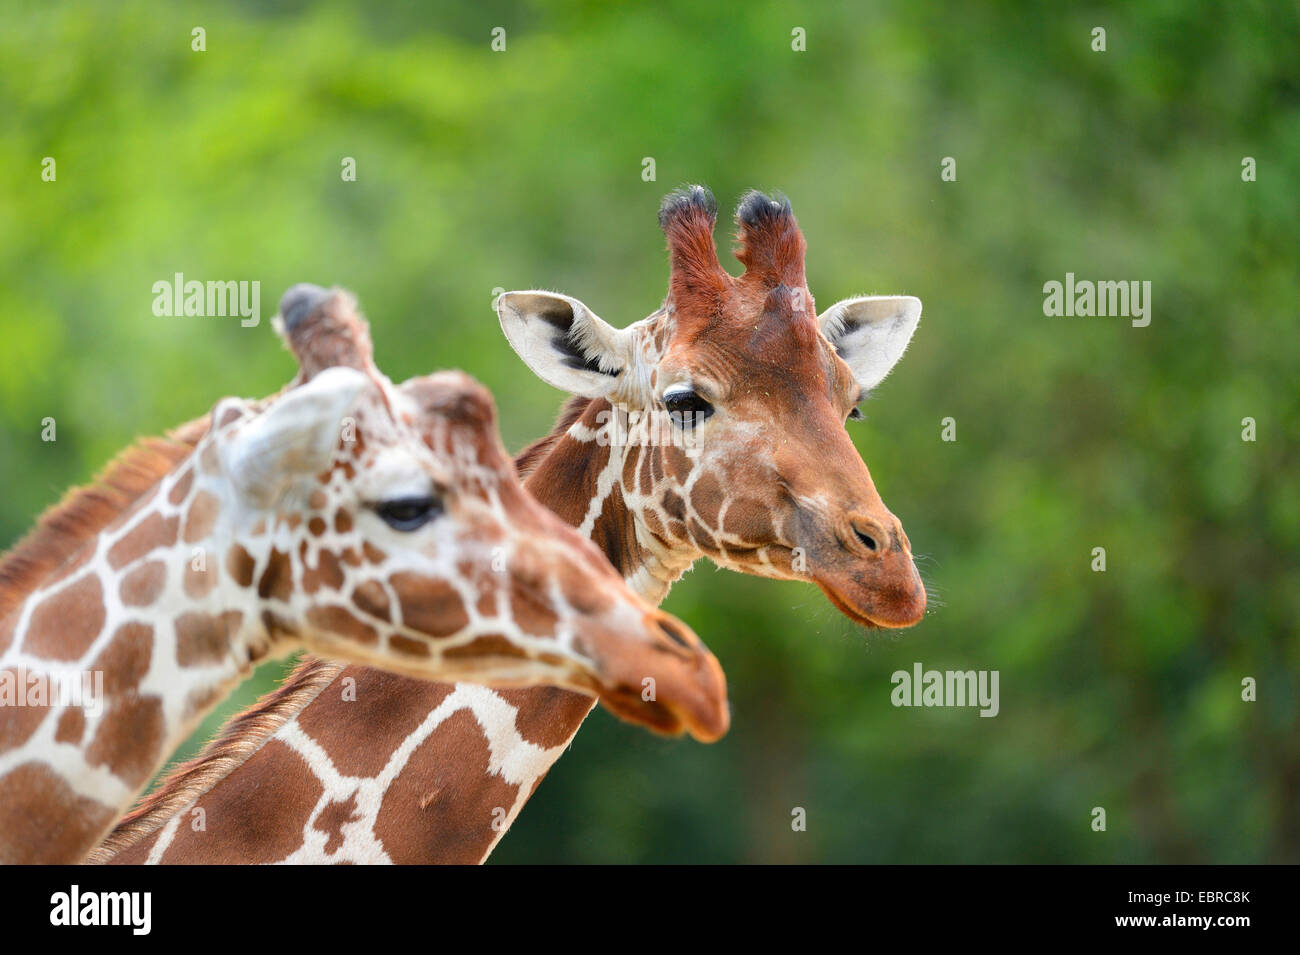 Jirafa reticulada (Giraffa camelopardalis reticulata), retrato de dos jirafas Foto de stock